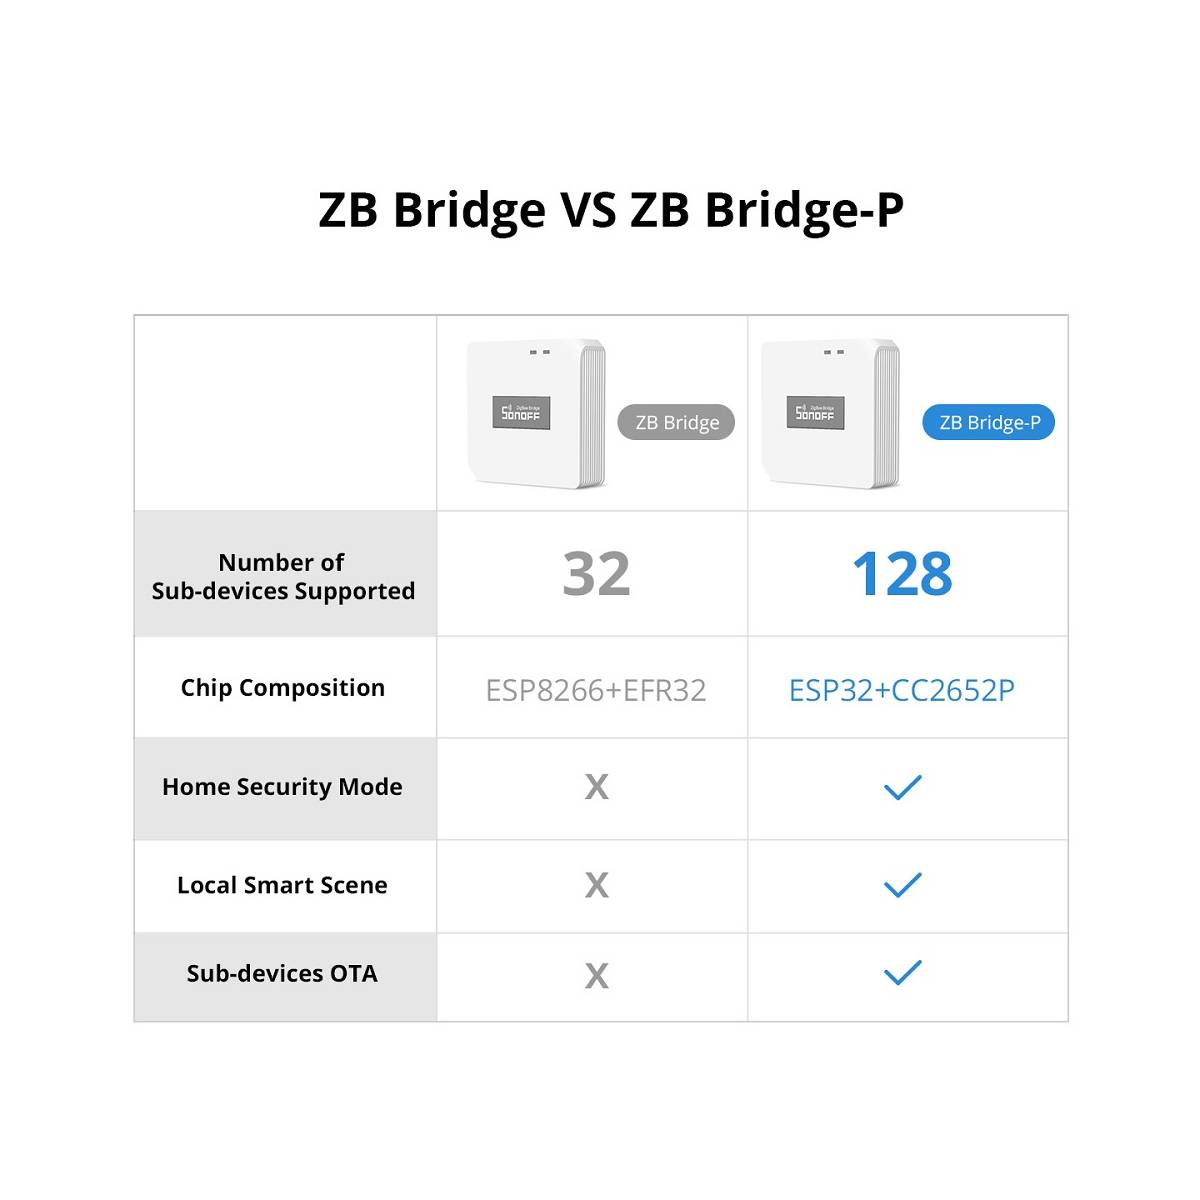 Sonoff Zigbee Bridge Pro - smart Zigbee-WiFi Bridge for eWeL